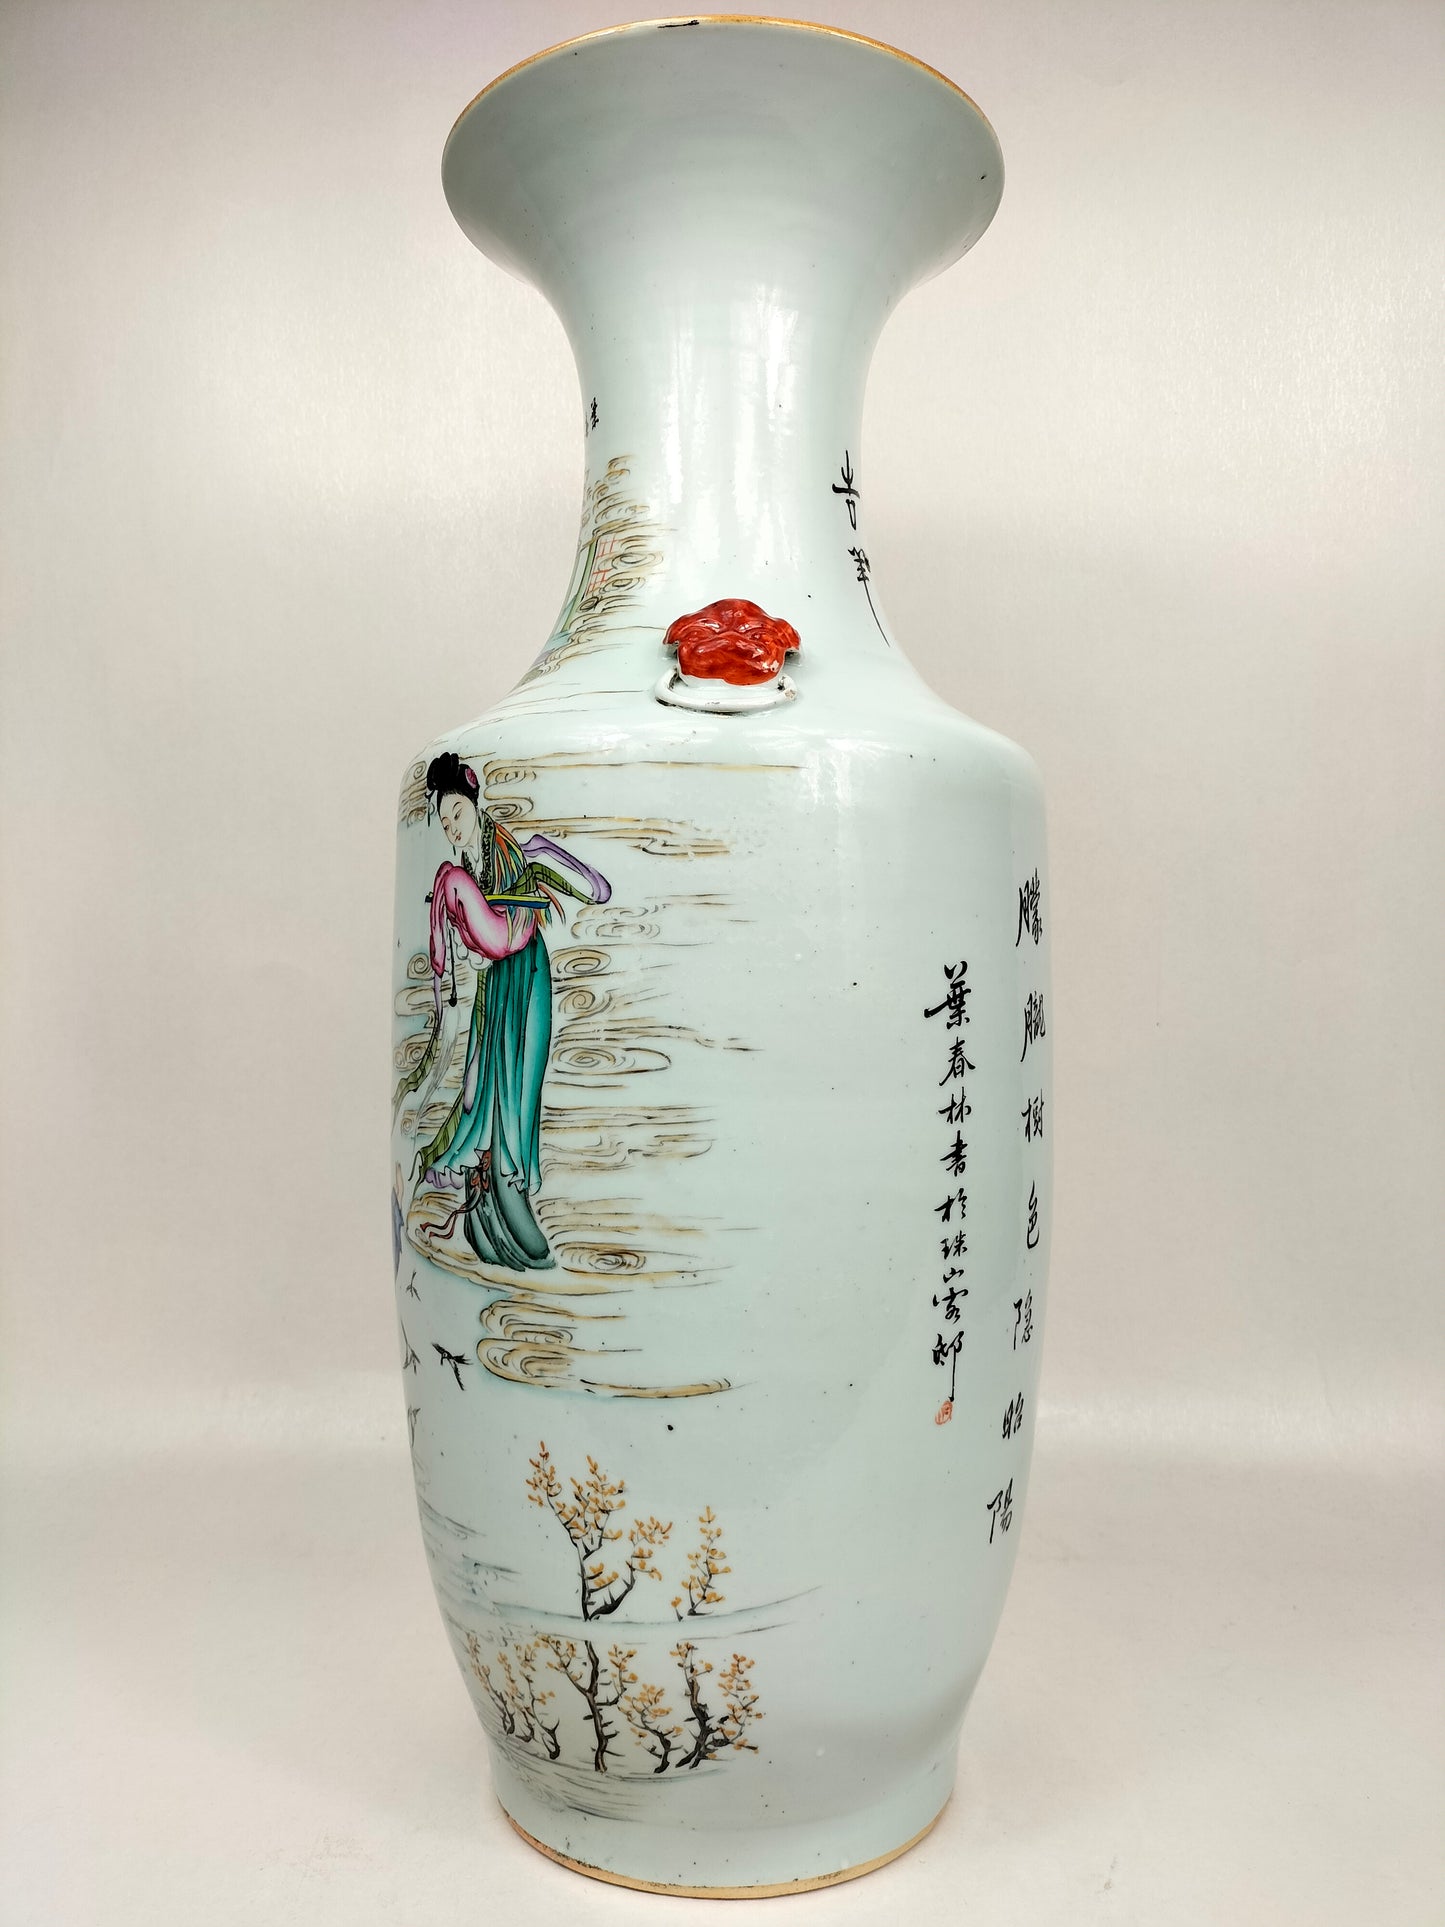 مزهرية صينية أثرية كبيرة مزينة بأشكال وجاموس الماء // فترة الجمهورية (1912-1949)